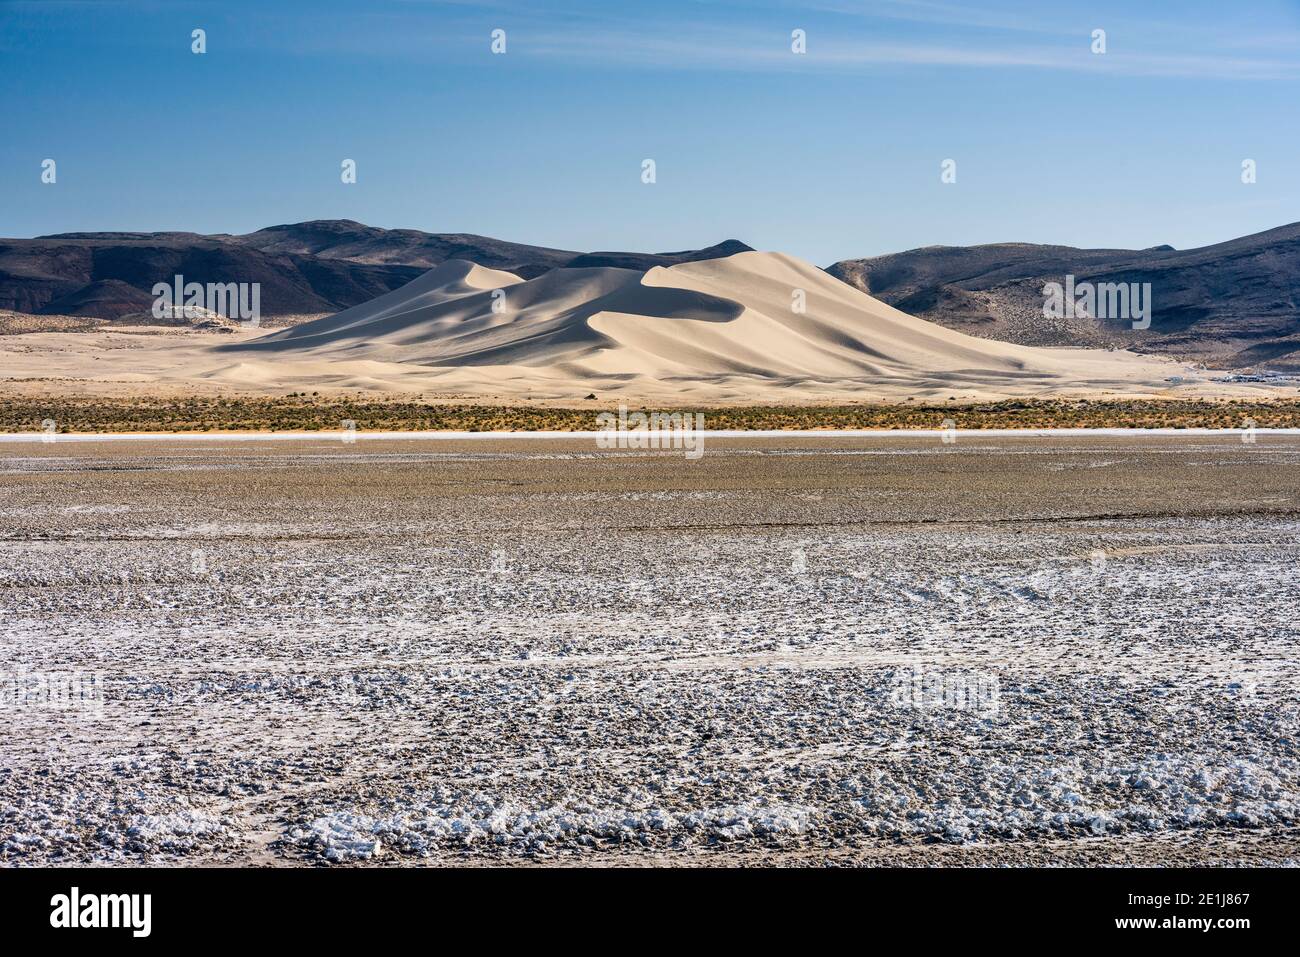 Le dune di sabbia a Mountain Recreation Area, bacino grande deserto, vista dalla strada isolate (Hwy 50) vicino Fallon, Nevada, STATI UNITI D'AMERICA Foto Stock